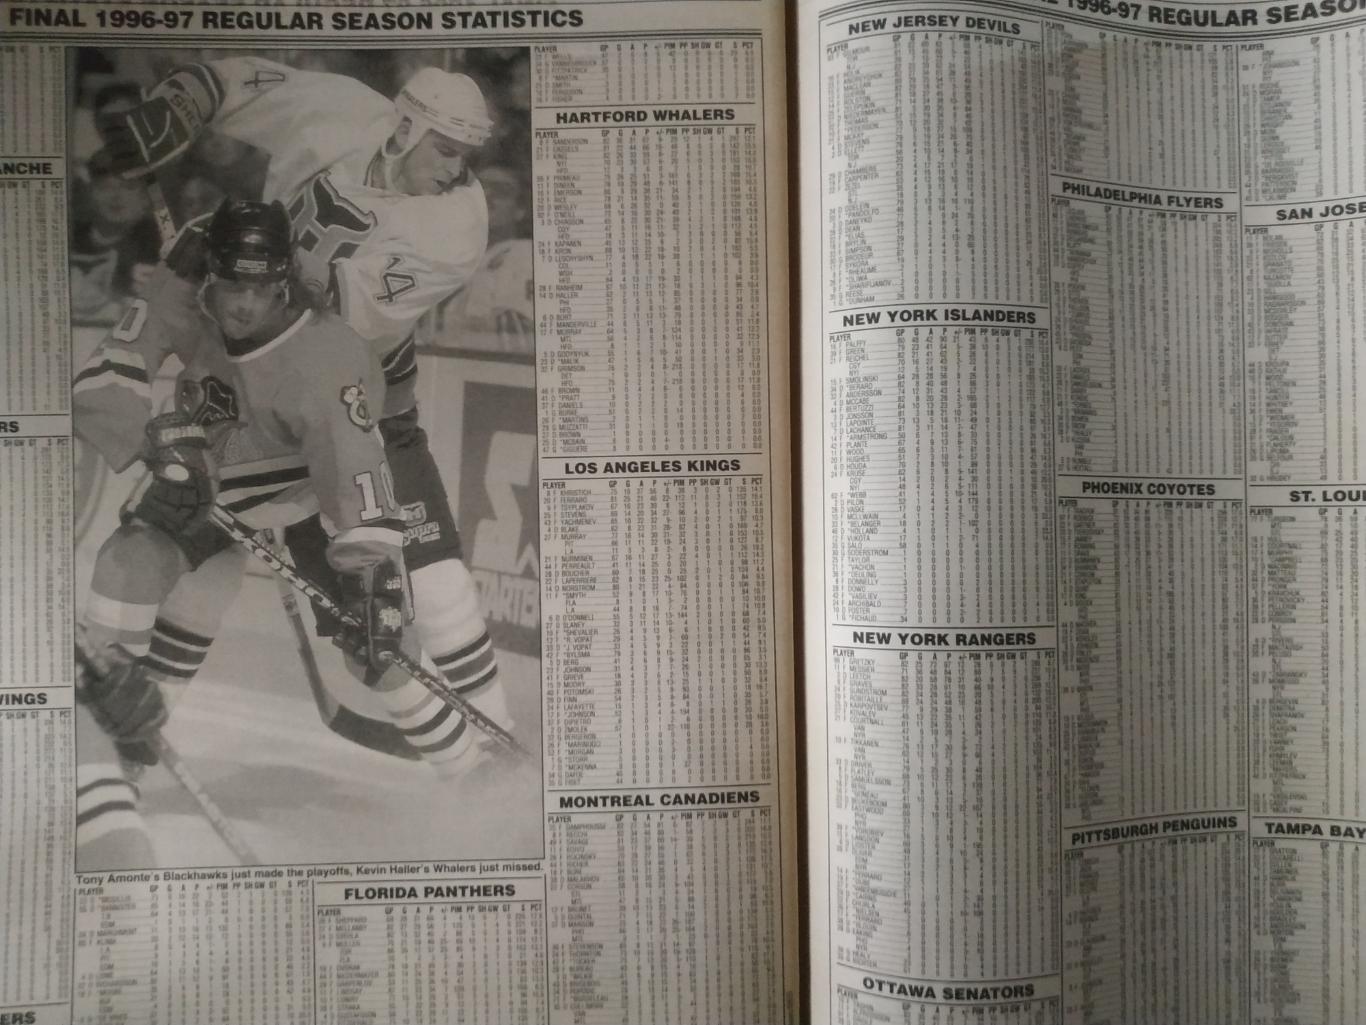 ХОККЕЙ ЖУРНАЛ ЕЖЕНЕДЕЛЬНИК НХЛ НОВОСТИ ХОККЕЯ NHL MAY.2 1997 THE HOCKEY NEWS 7